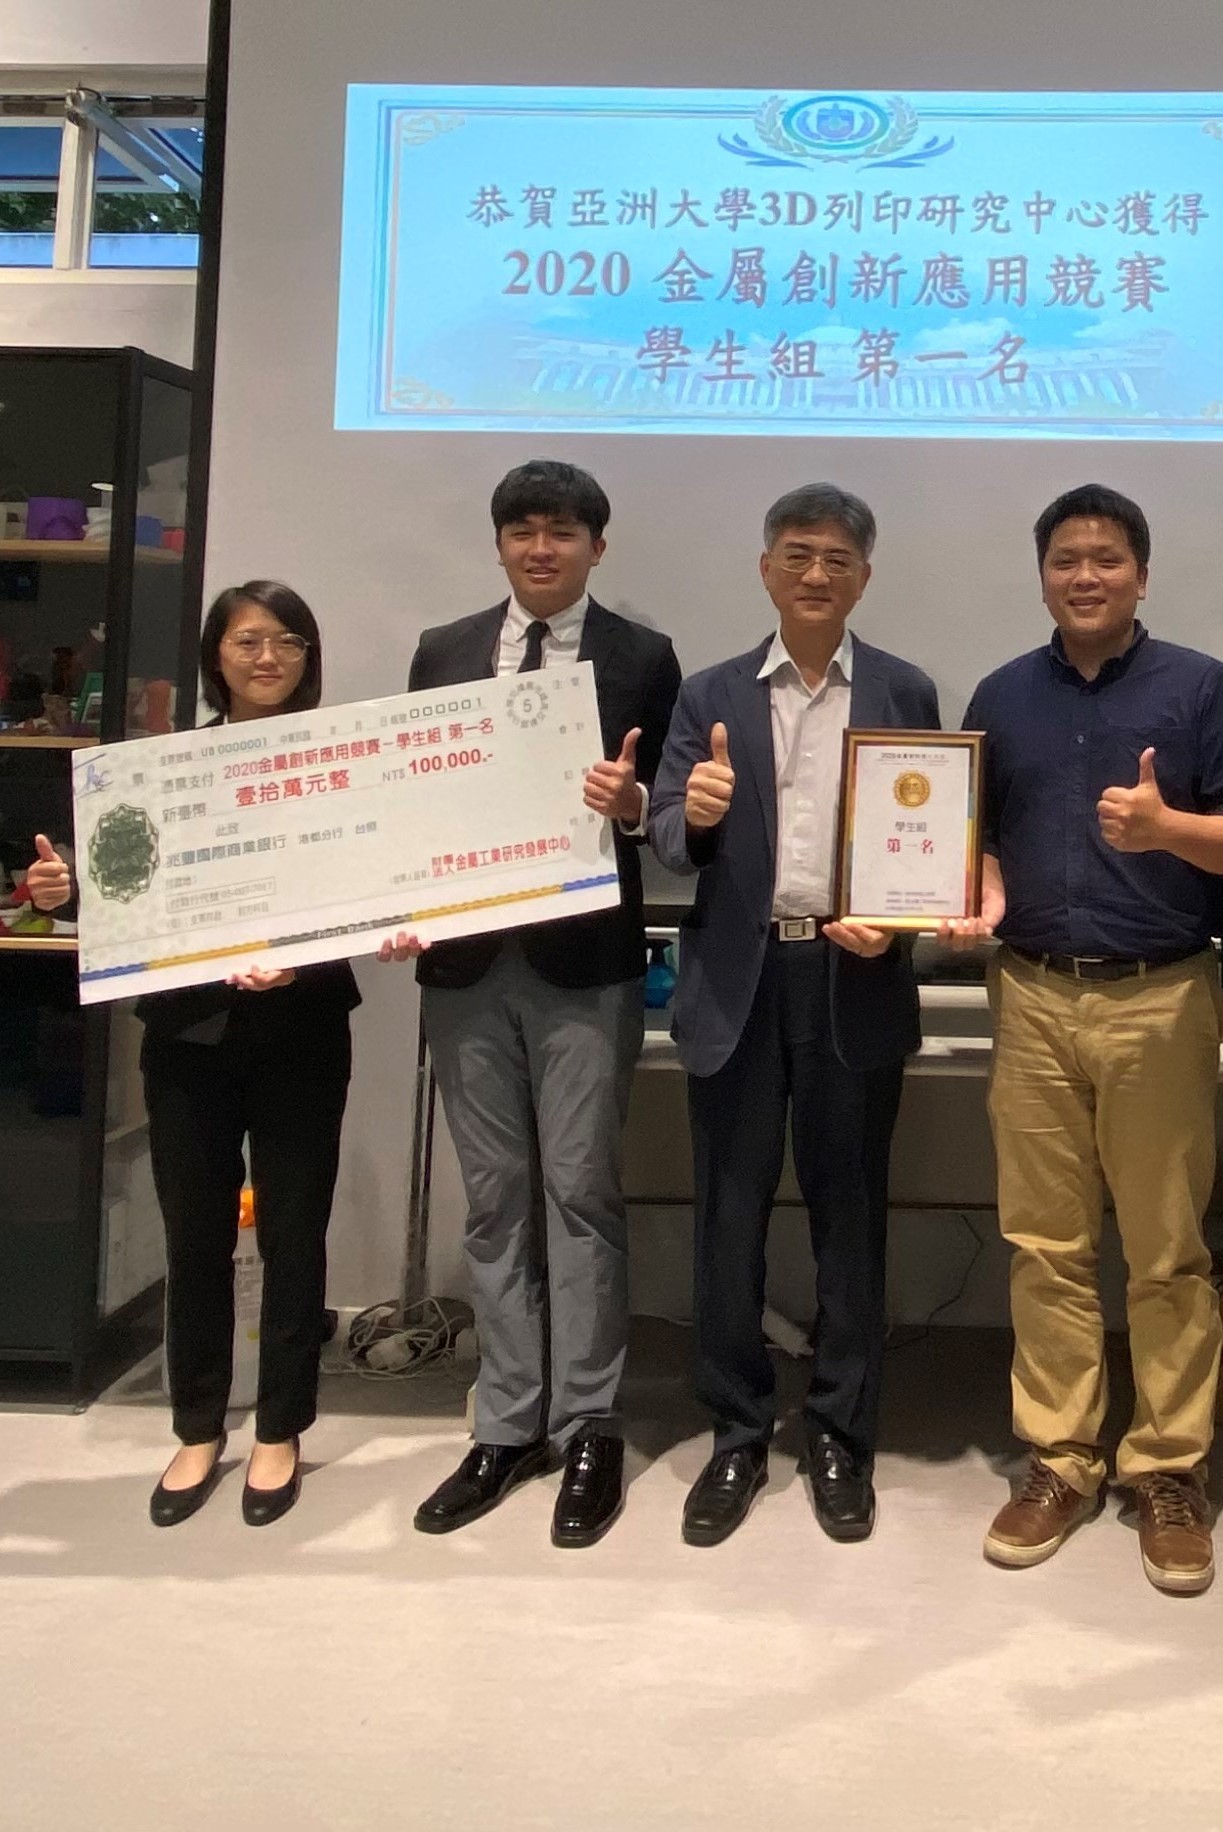 亚洲大学副校长暨3D打印研究中心主任陈大正（左三）、生医系郭哲男老师（左四）与「2020金属创新应用」竞赛第1名的学生王郁评（左一）、徐子殷（左二）合影。